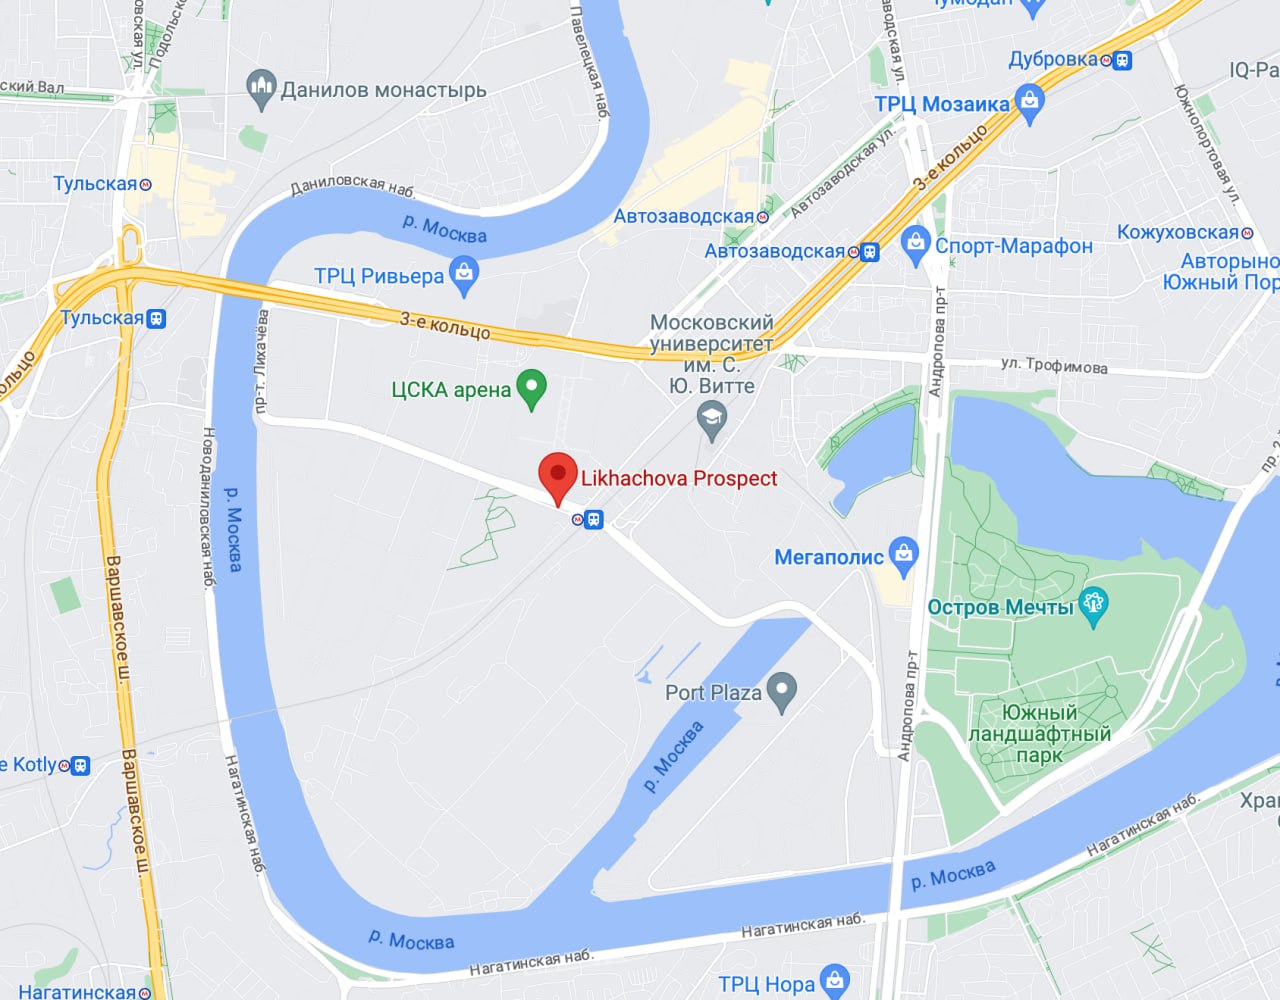 Проспект Лихачева 20 на карте Москвы. Политджойстик телеграмм канал новости